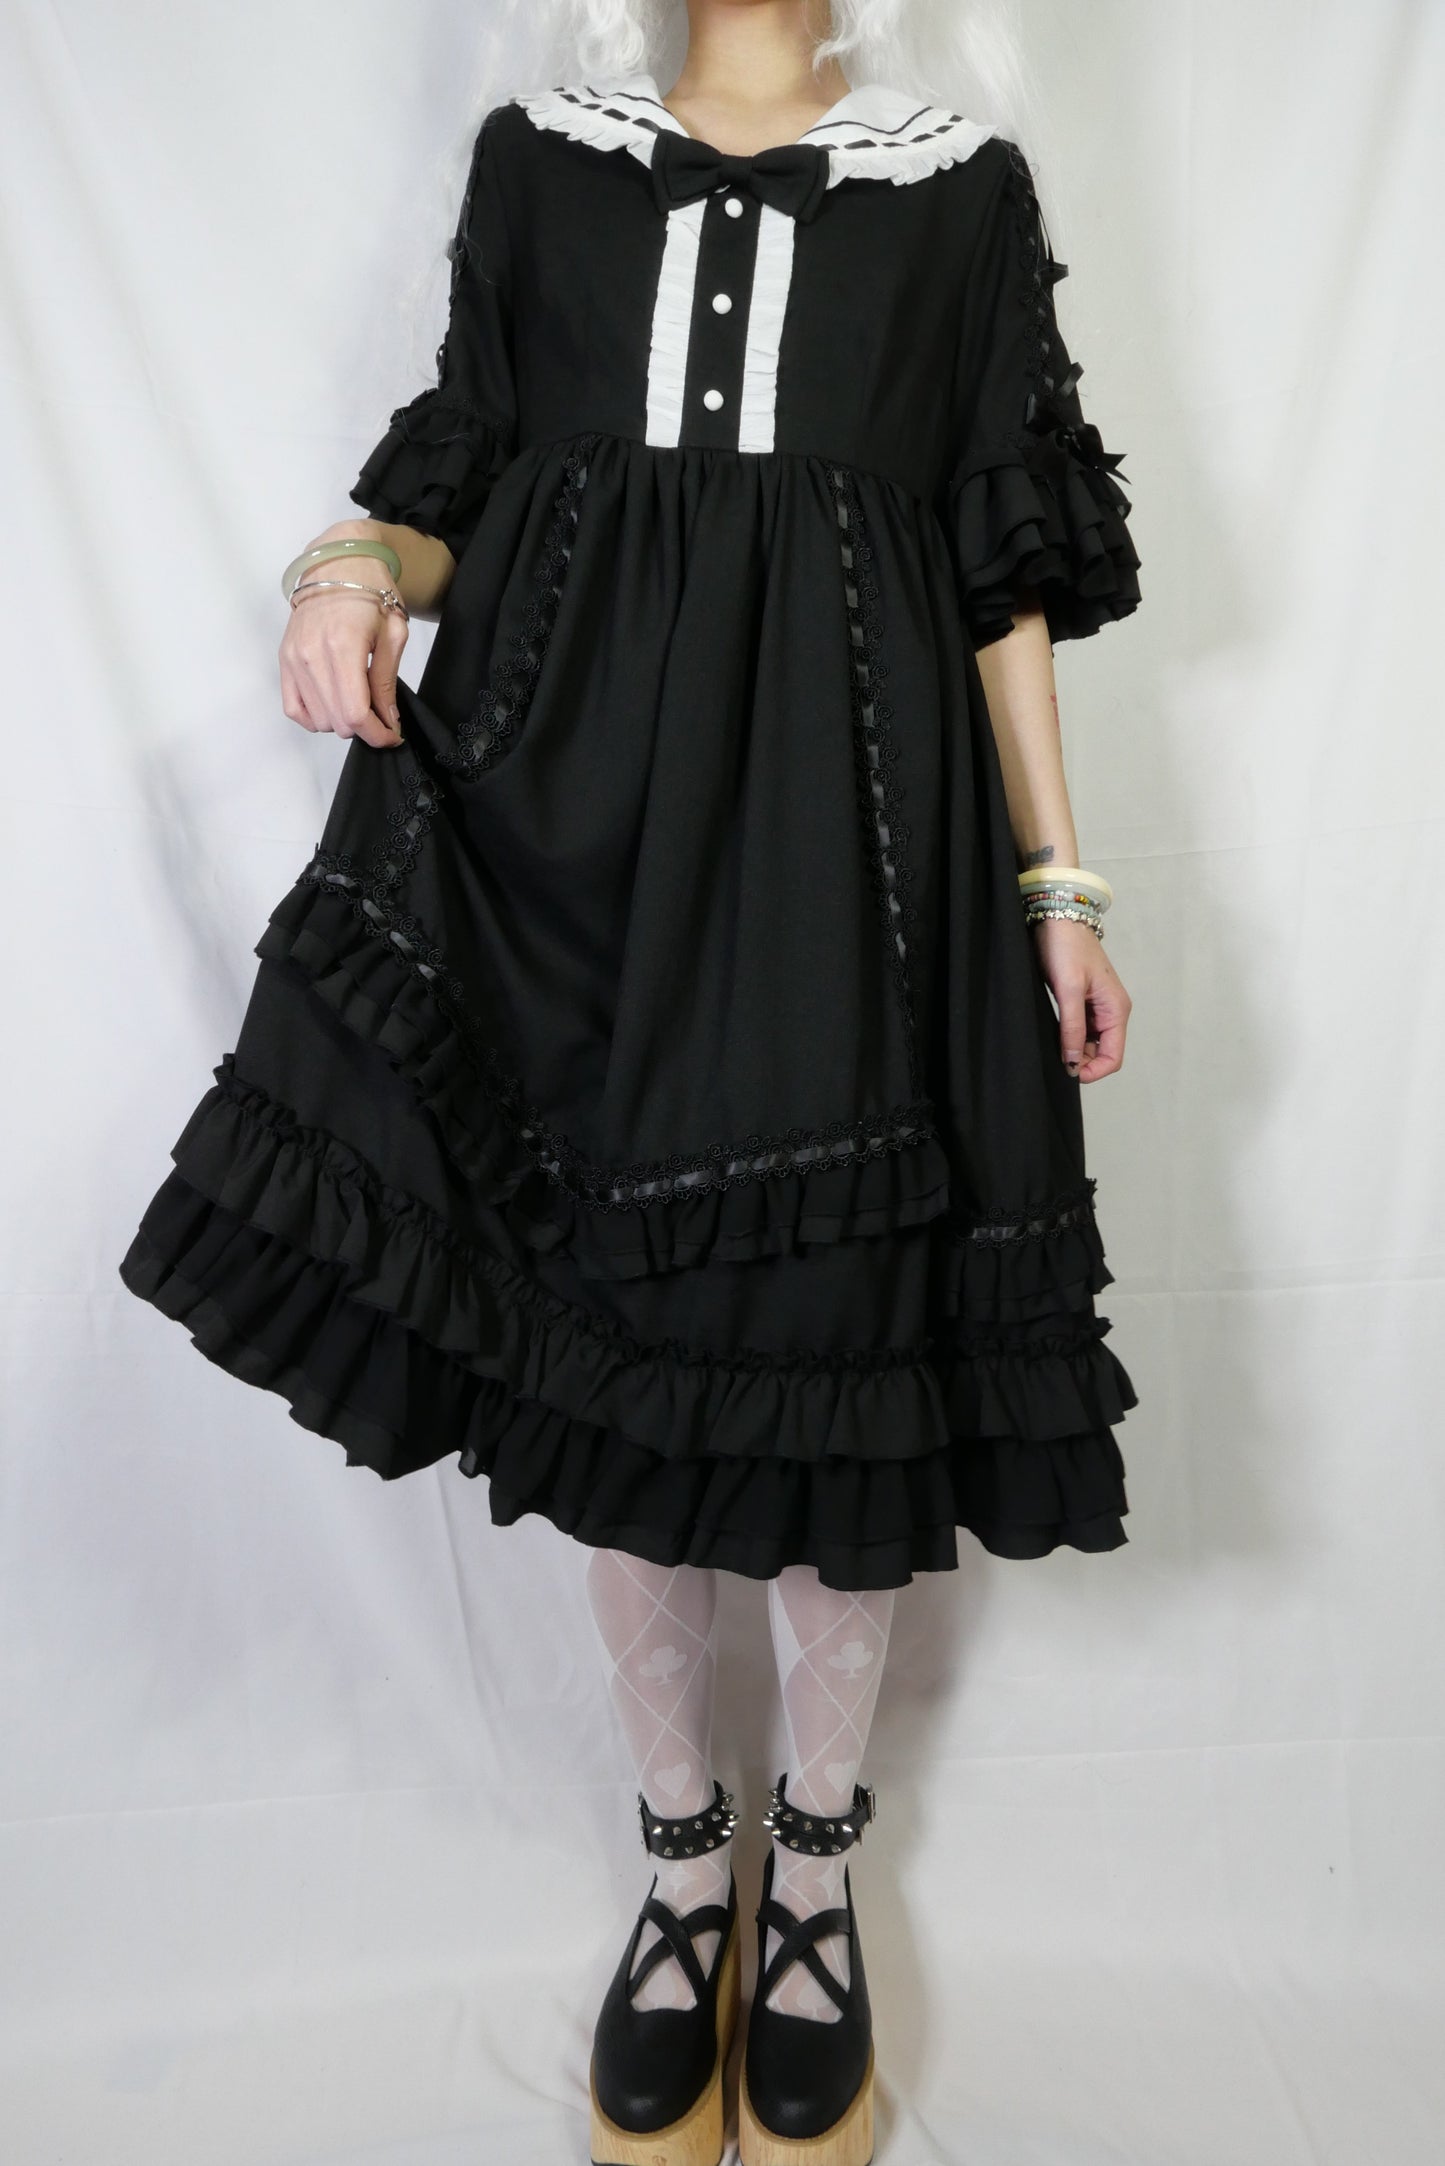 Eieyomi Black Ruffle Dress